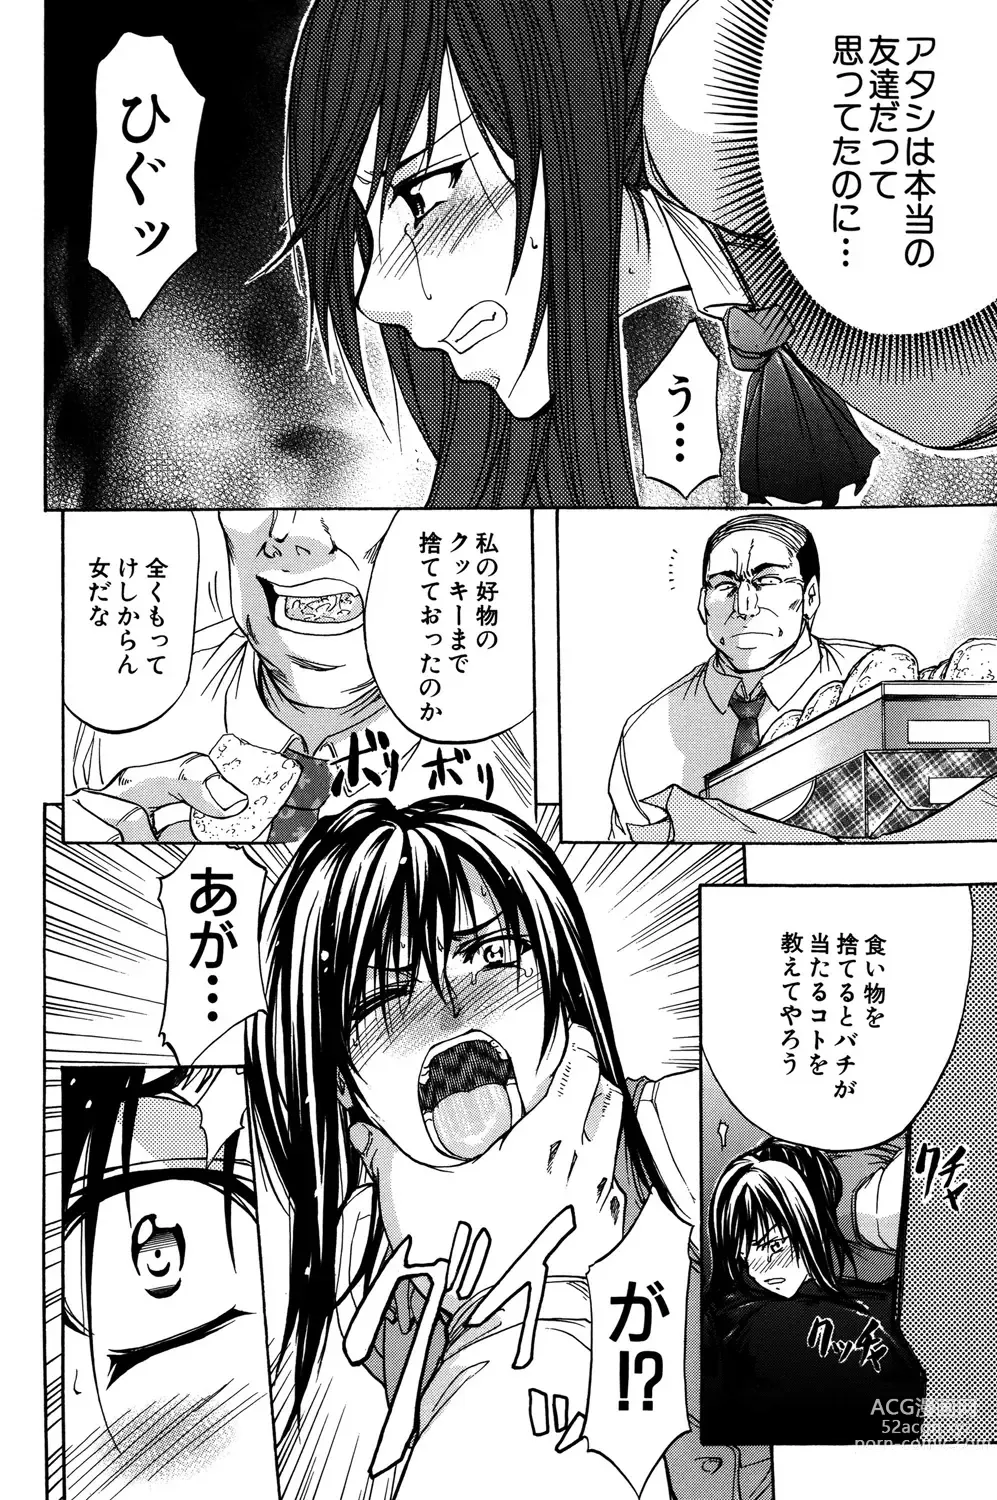 Page 179 of manga ANAL BACKER